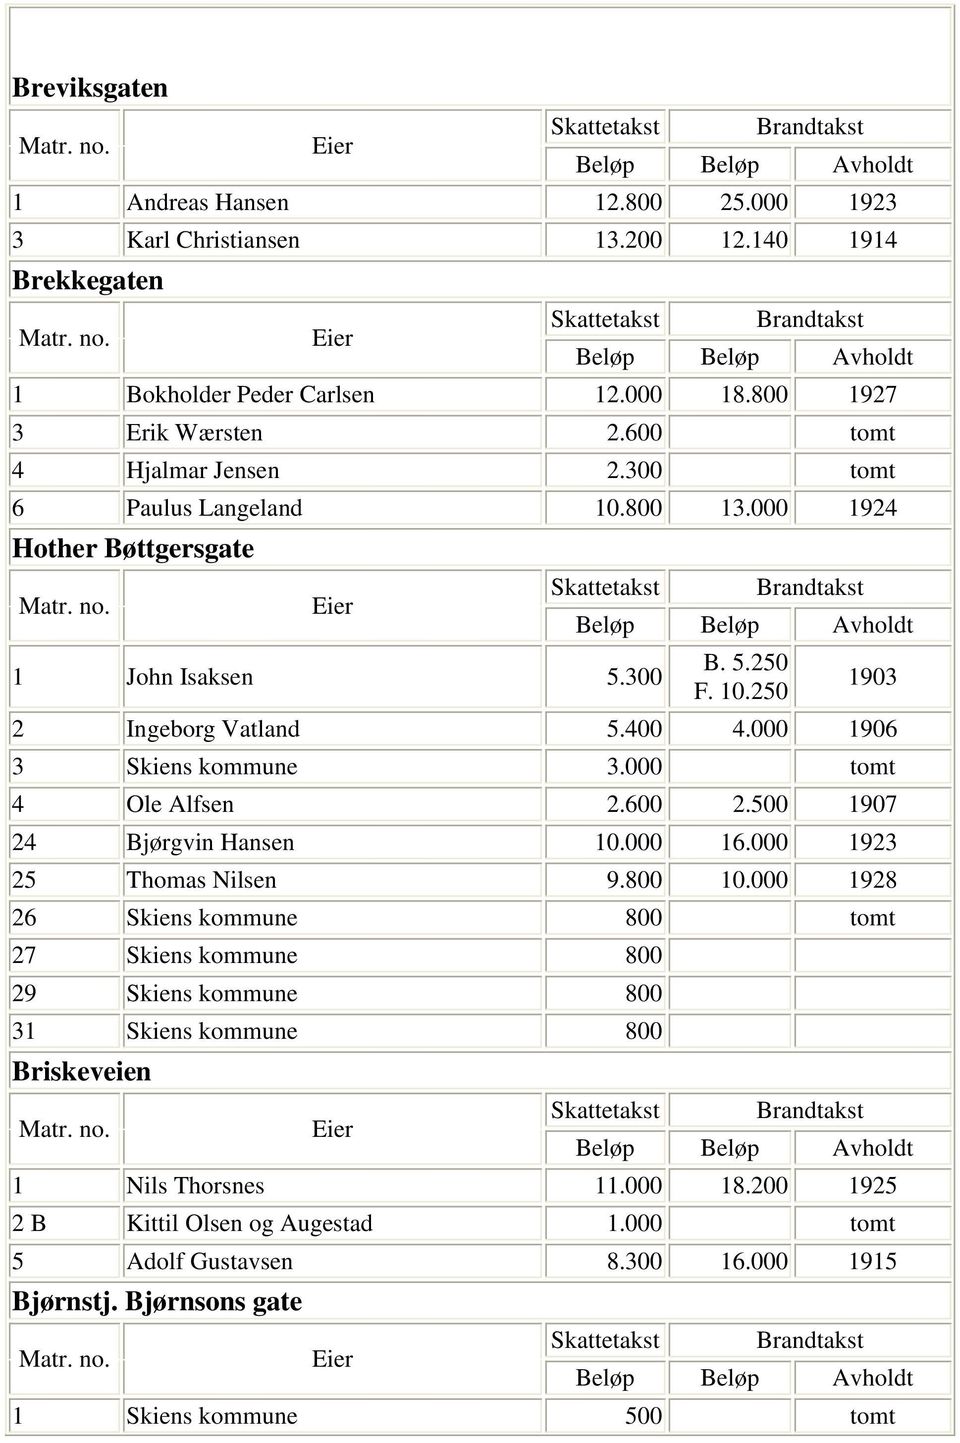 000 1906 3 Skiens kommune 3.000 tomt 4 Ole Alfsen 2.600 2.500 1907 24 Bjørgvin Hansen 10.000 16.000 1923 25 Thomas Nilsen 9.800 10.